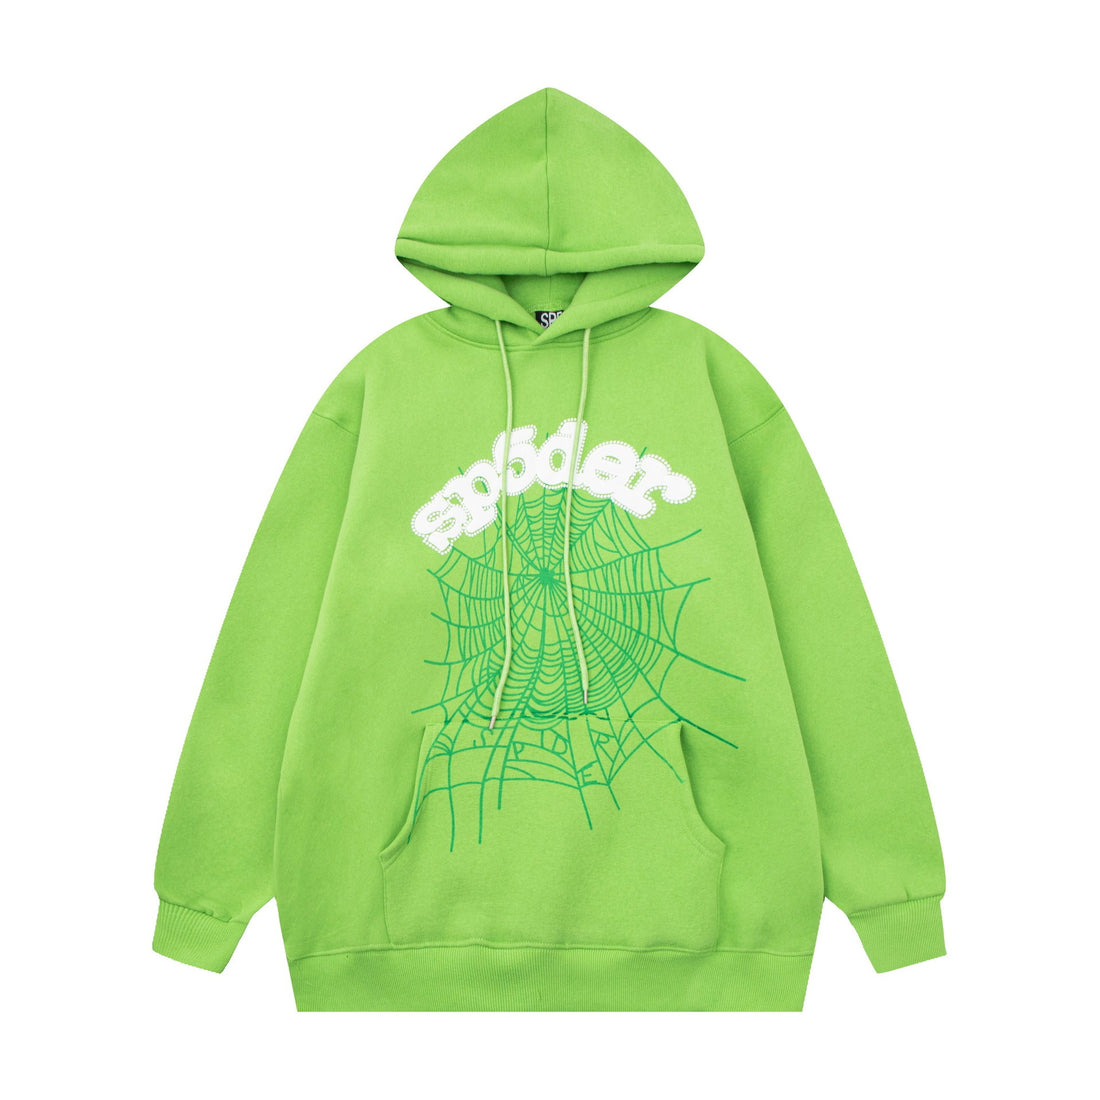 Vibrant Green Sp5der Hoodie - Trendy Web Print Hooded Sweatshirt - Seakoff